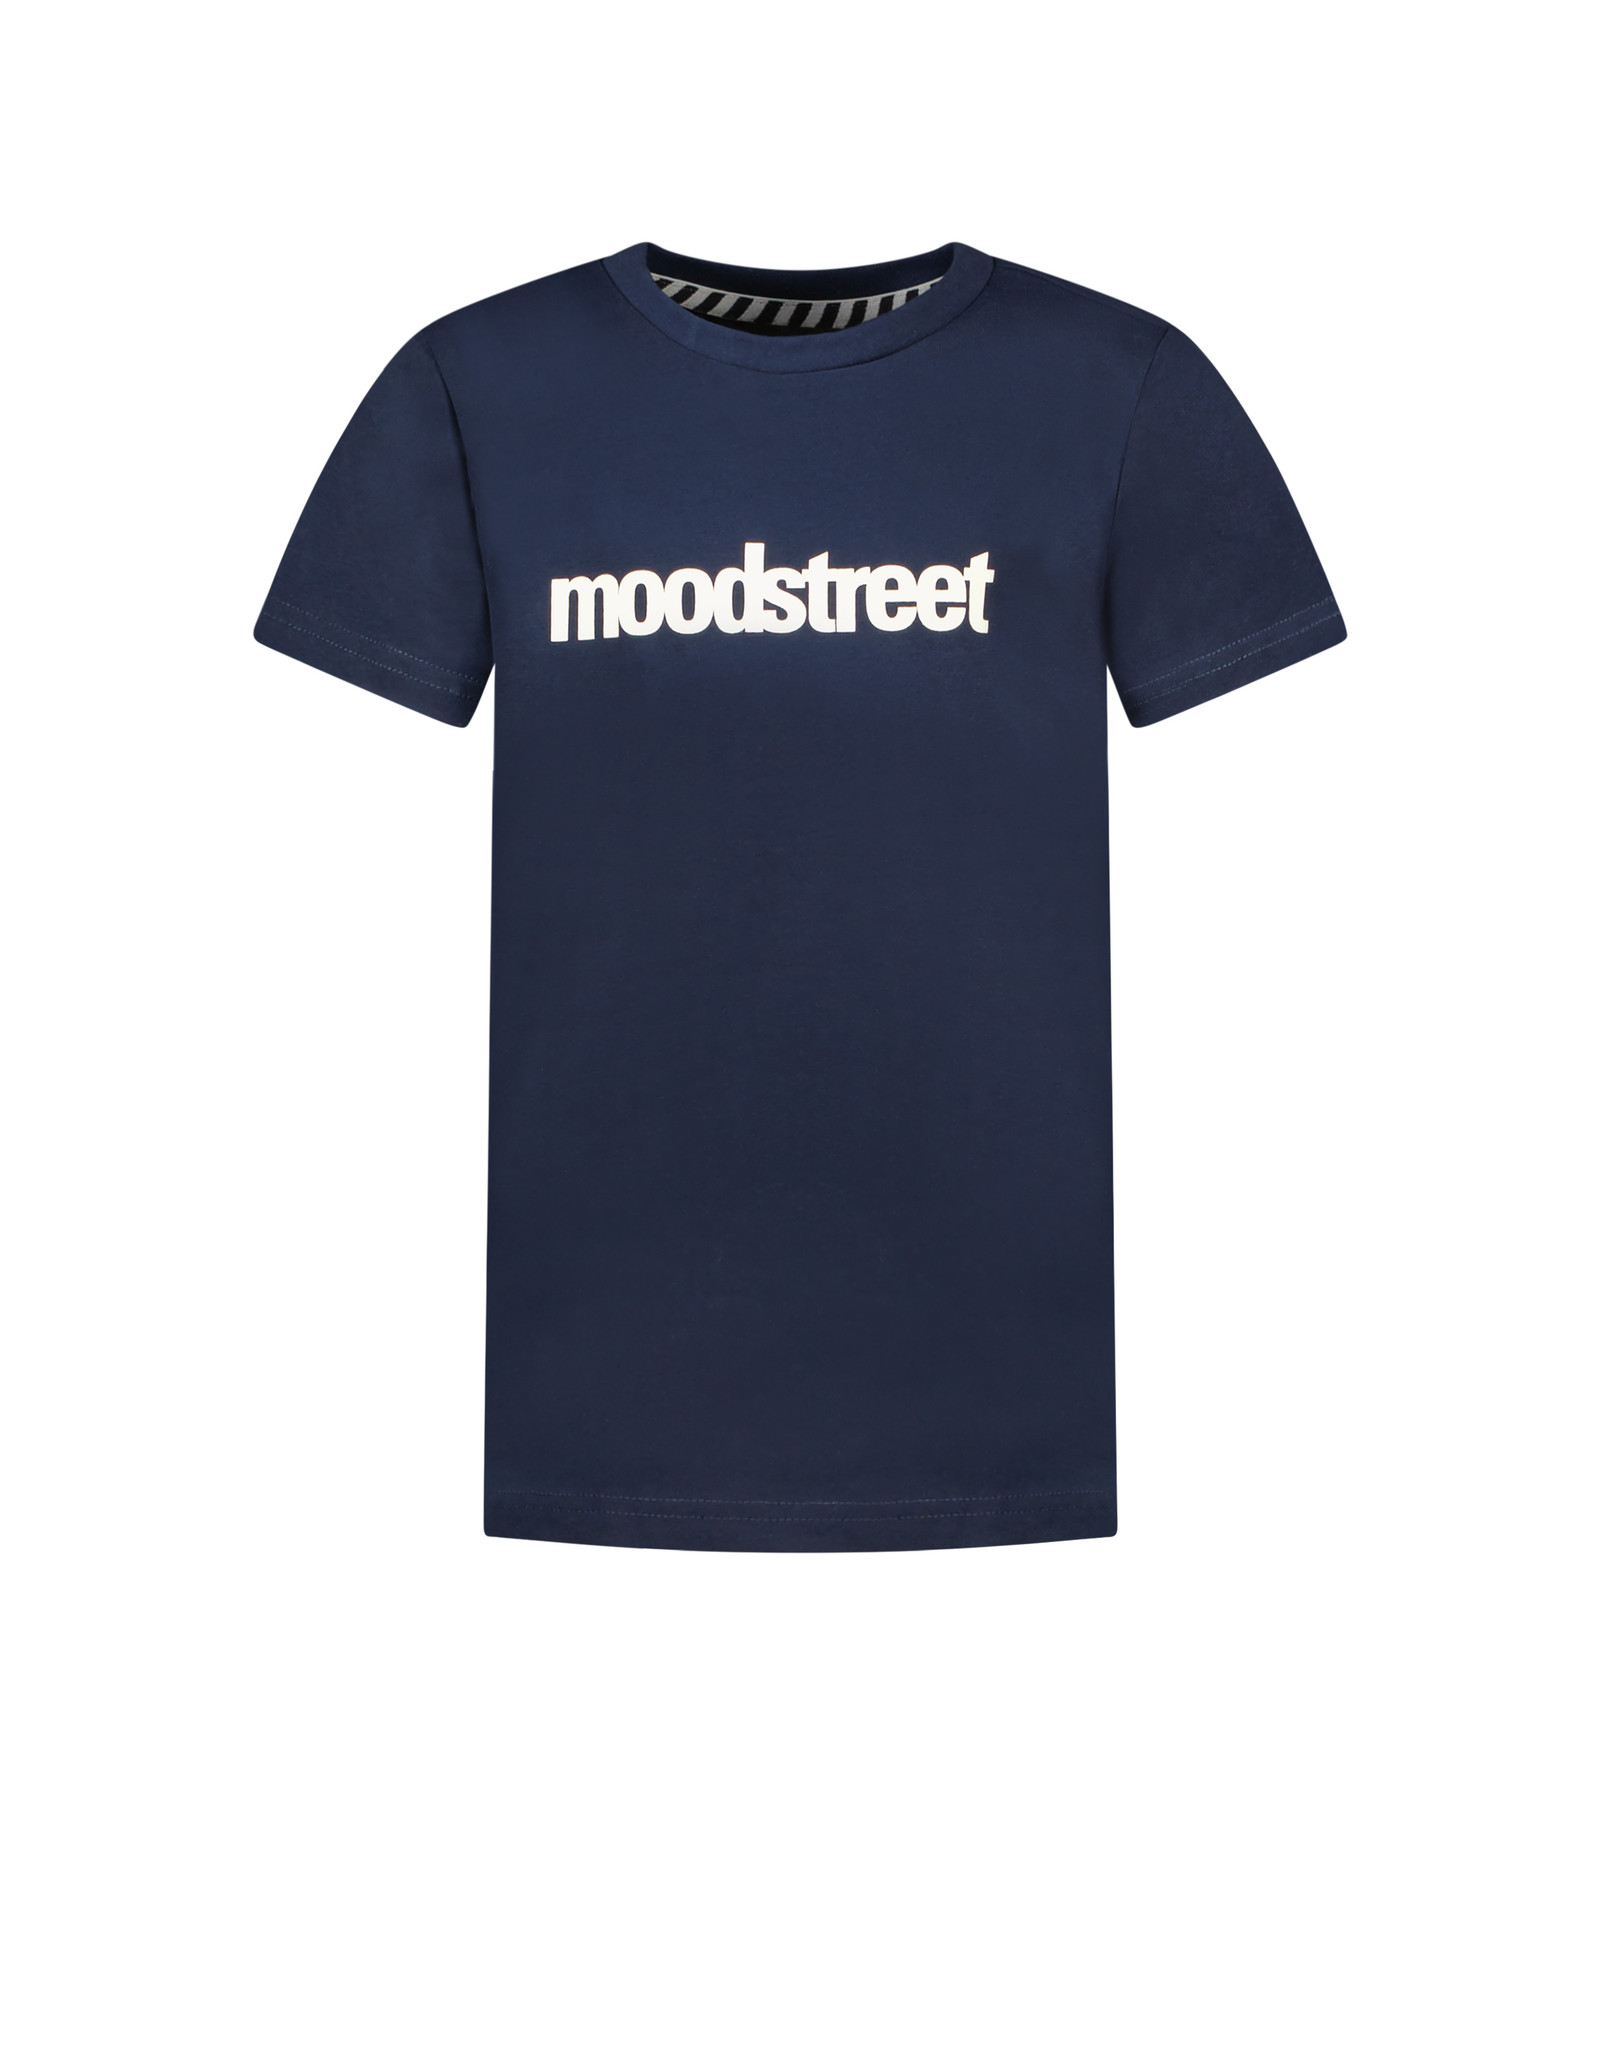 Moodstreet Shirt logo navy